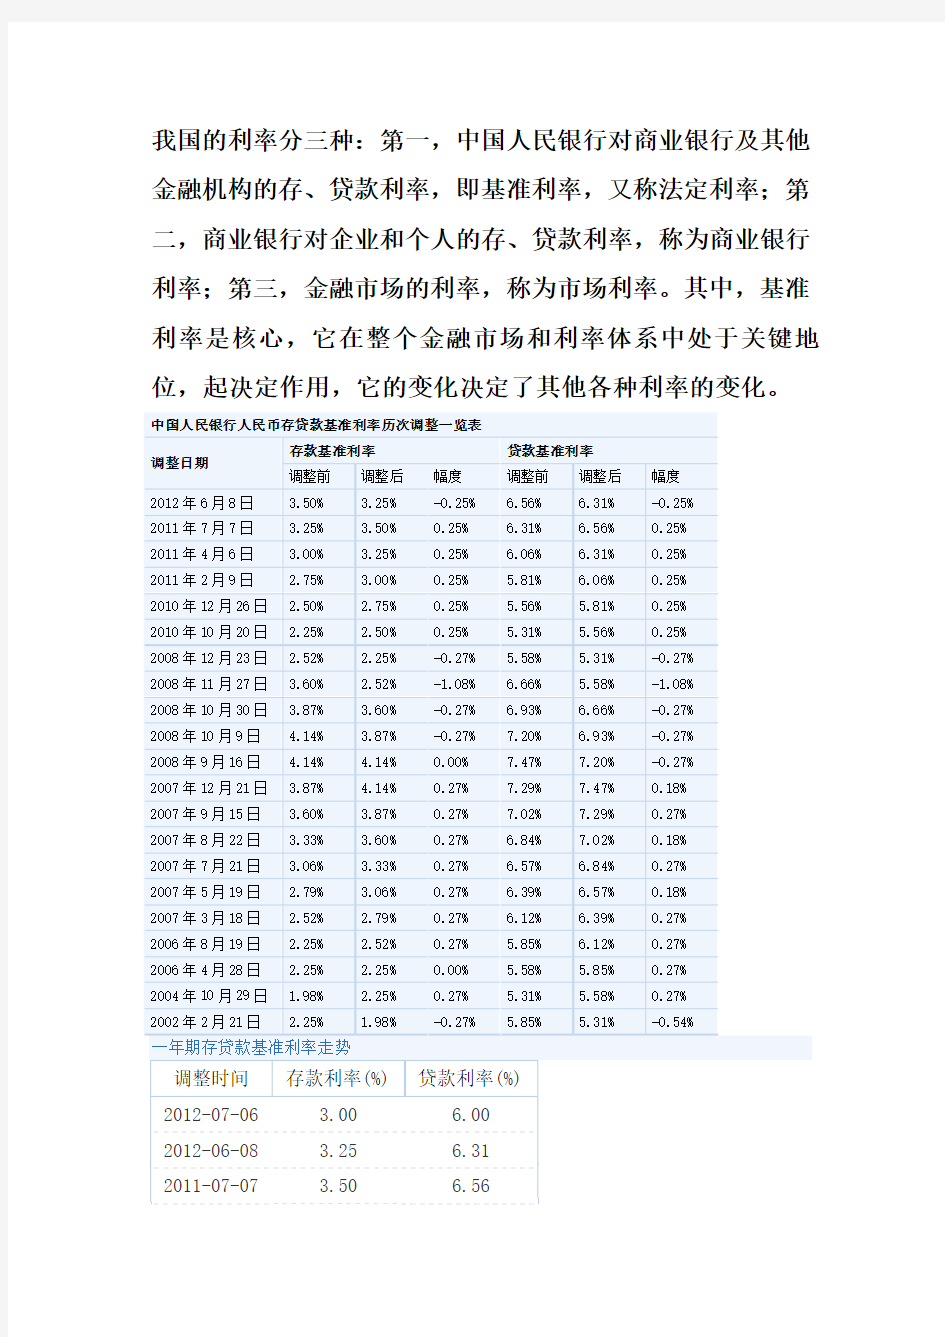 中国历年基础利率变化总结